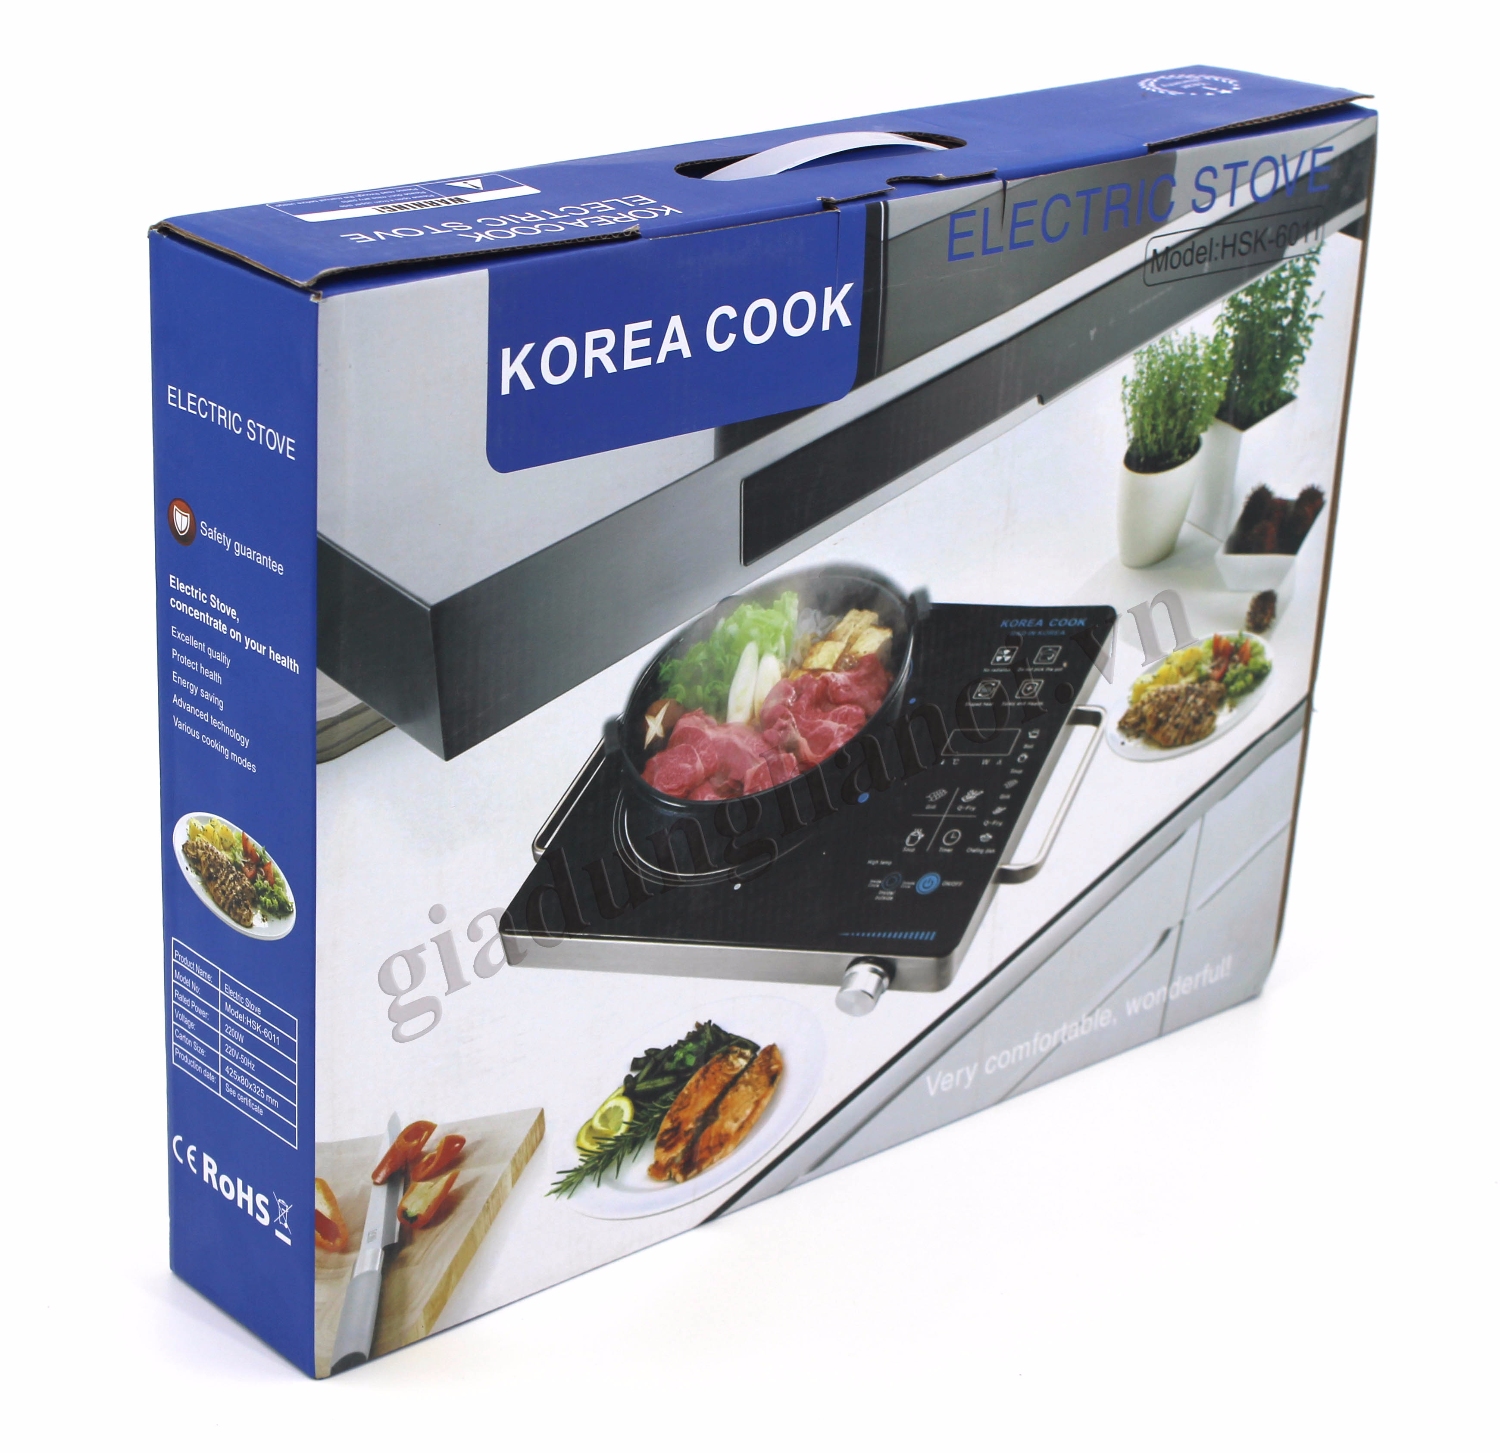 Bếp korea cook hai vòng nhiệt gia dụng hà nội vn giadunghanoi vn